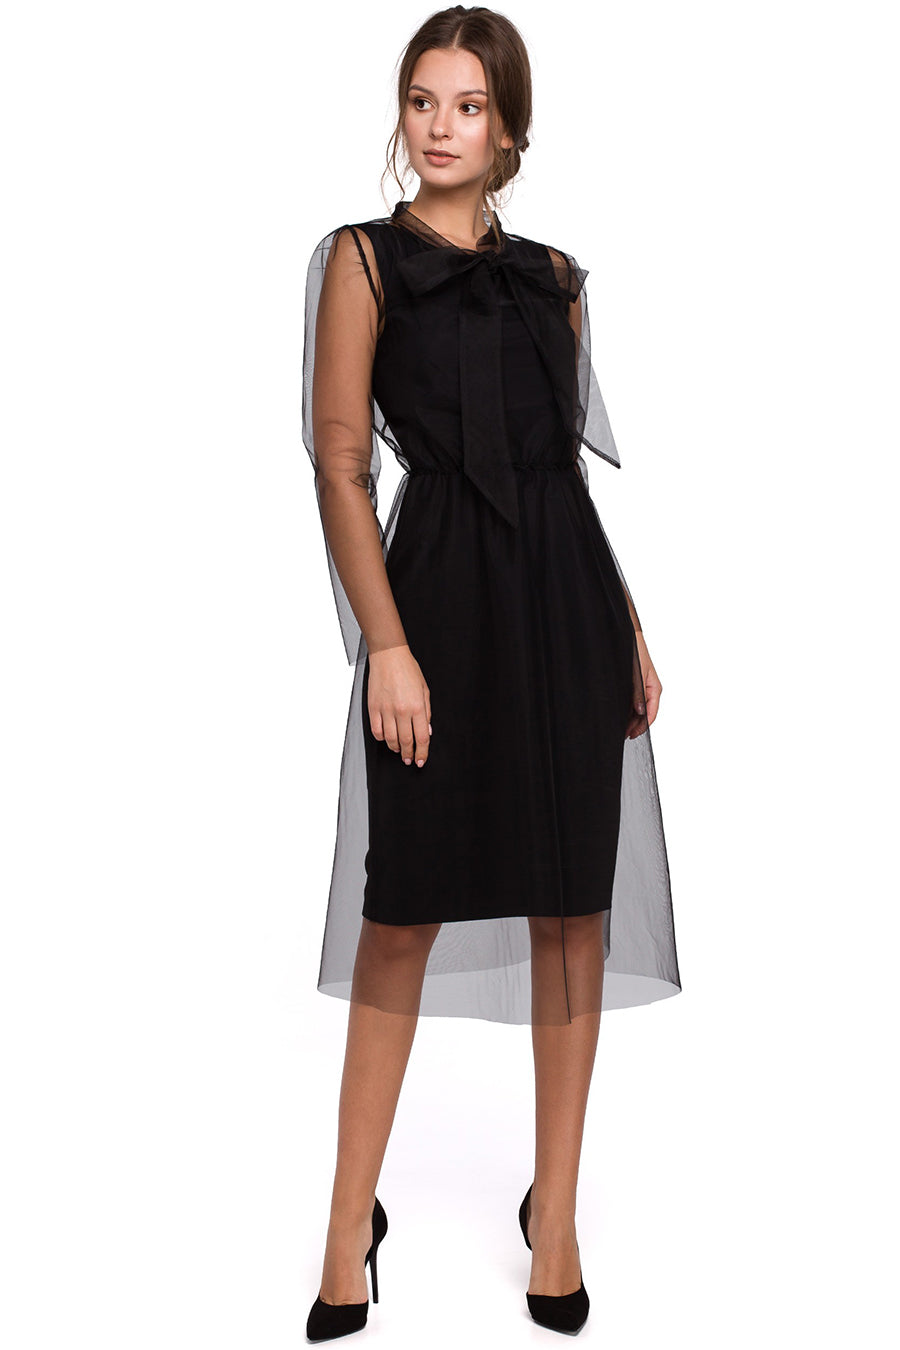 Γυναικείο φόρεμα Merlara, Μαύρο 1